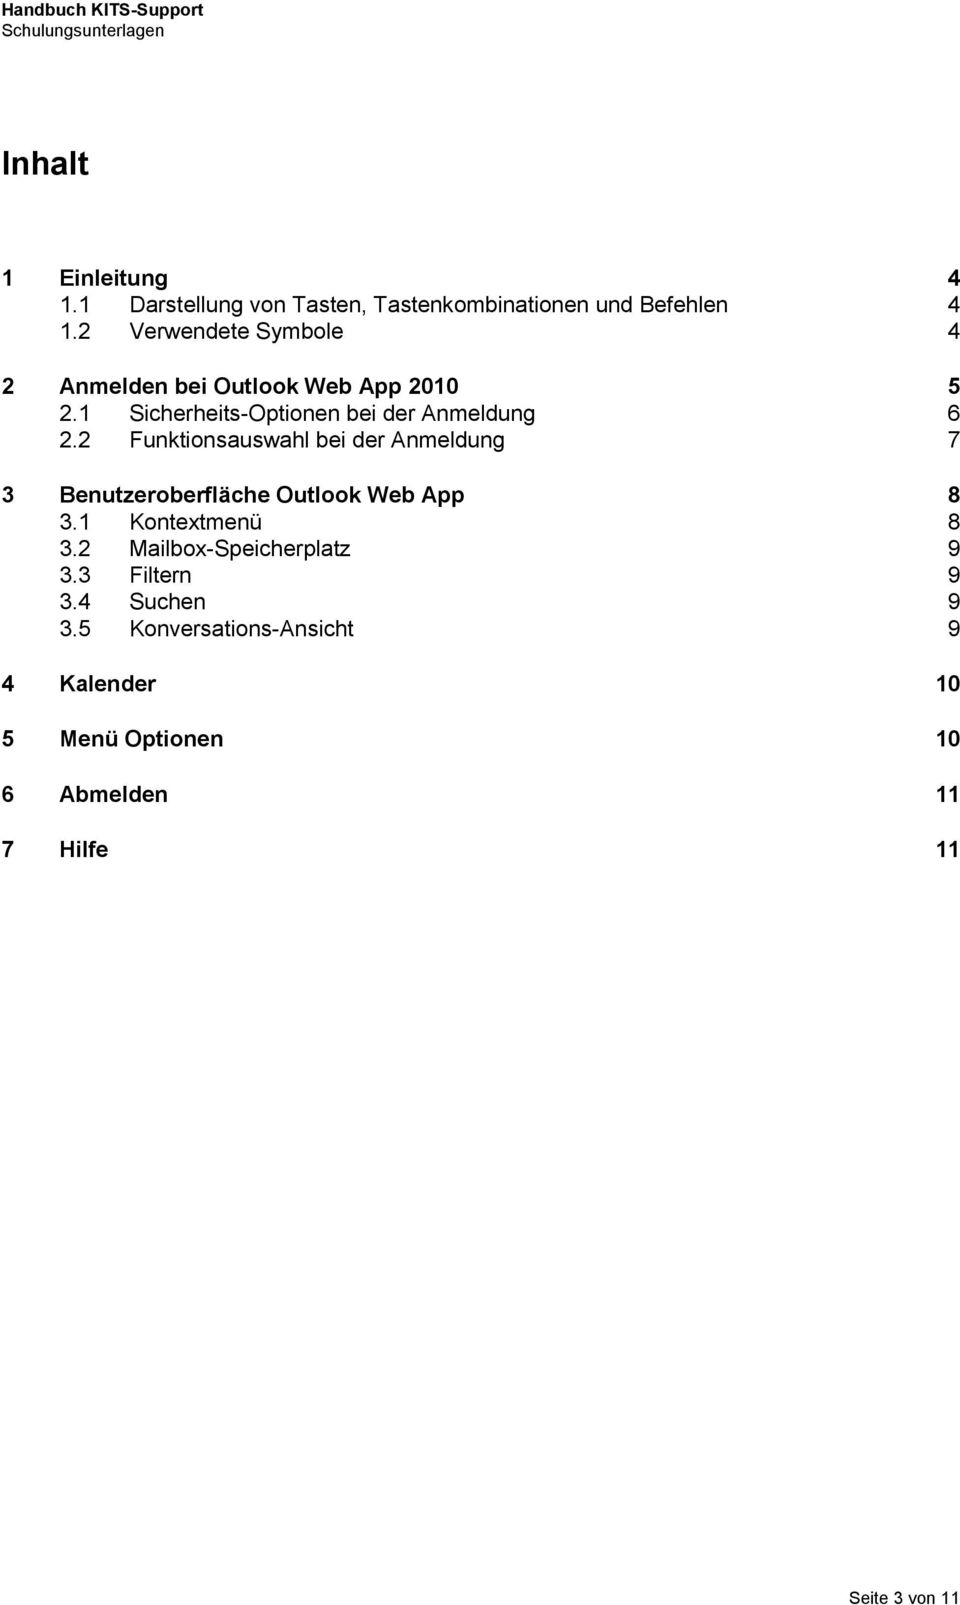 2 Funktionsauswahl bei der Anmeldung 7 3 Benutzeroberfläche Outlook Web App 8 3.1 Kontextmenü 8 3.